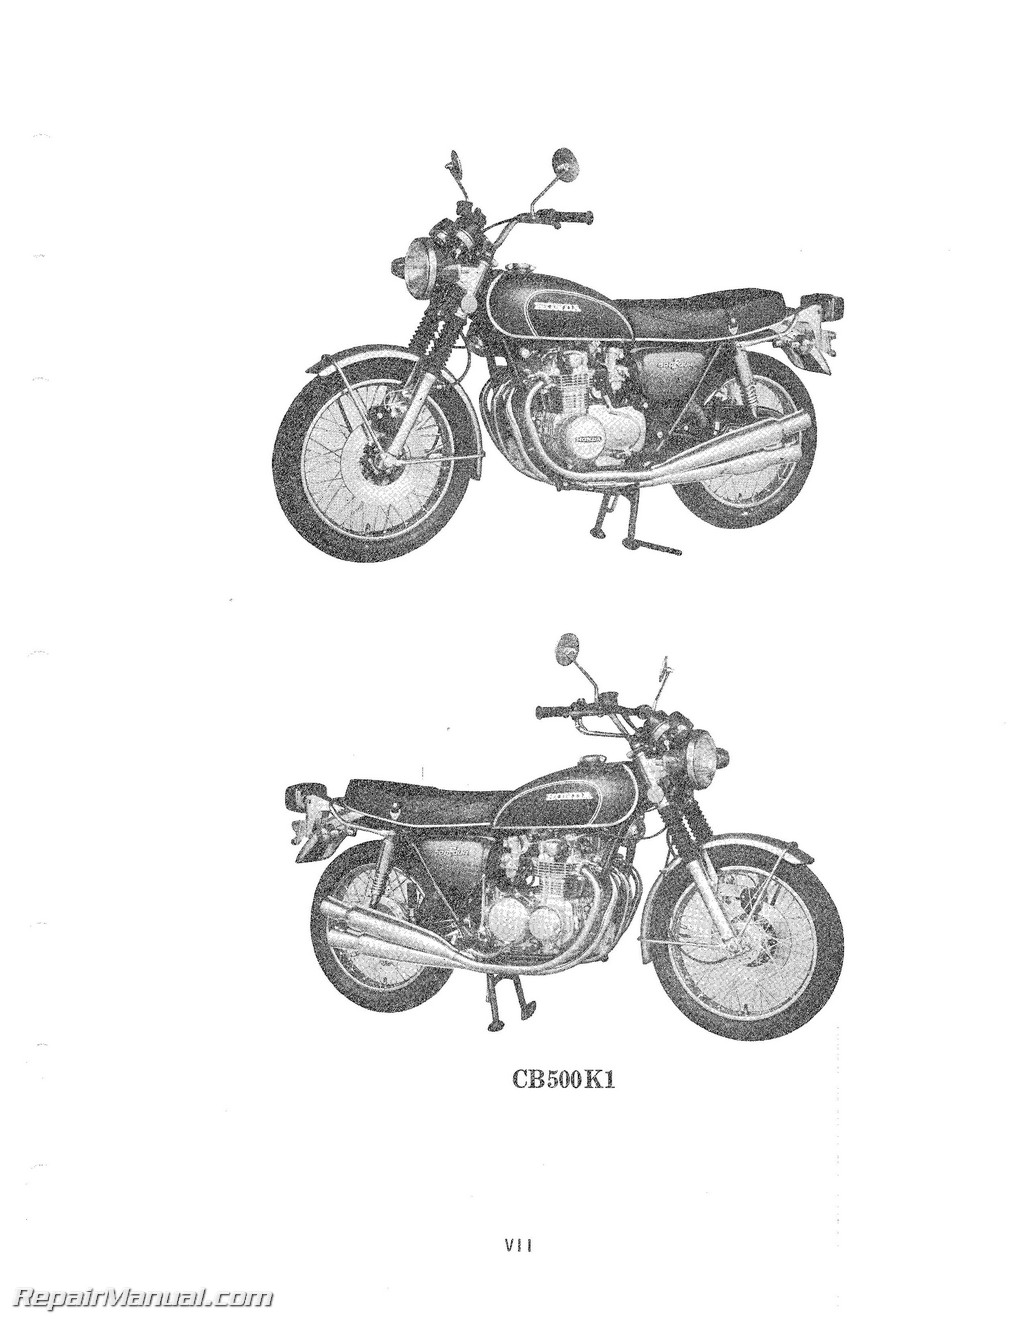 1972 Honda cb500 parts